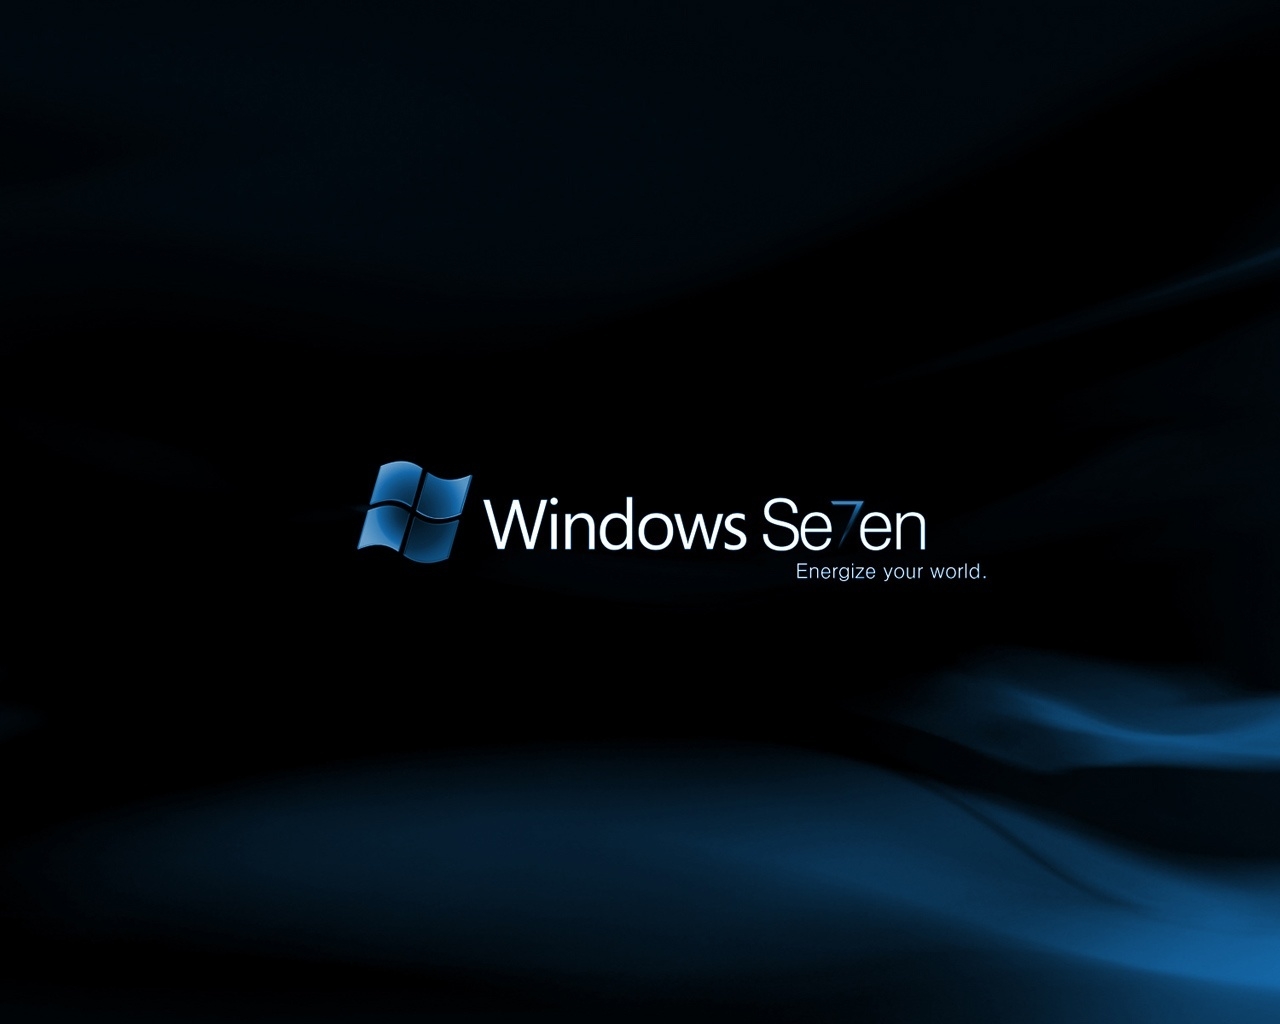 Windows Se7en Midnight for 1280 x 1024 resolution